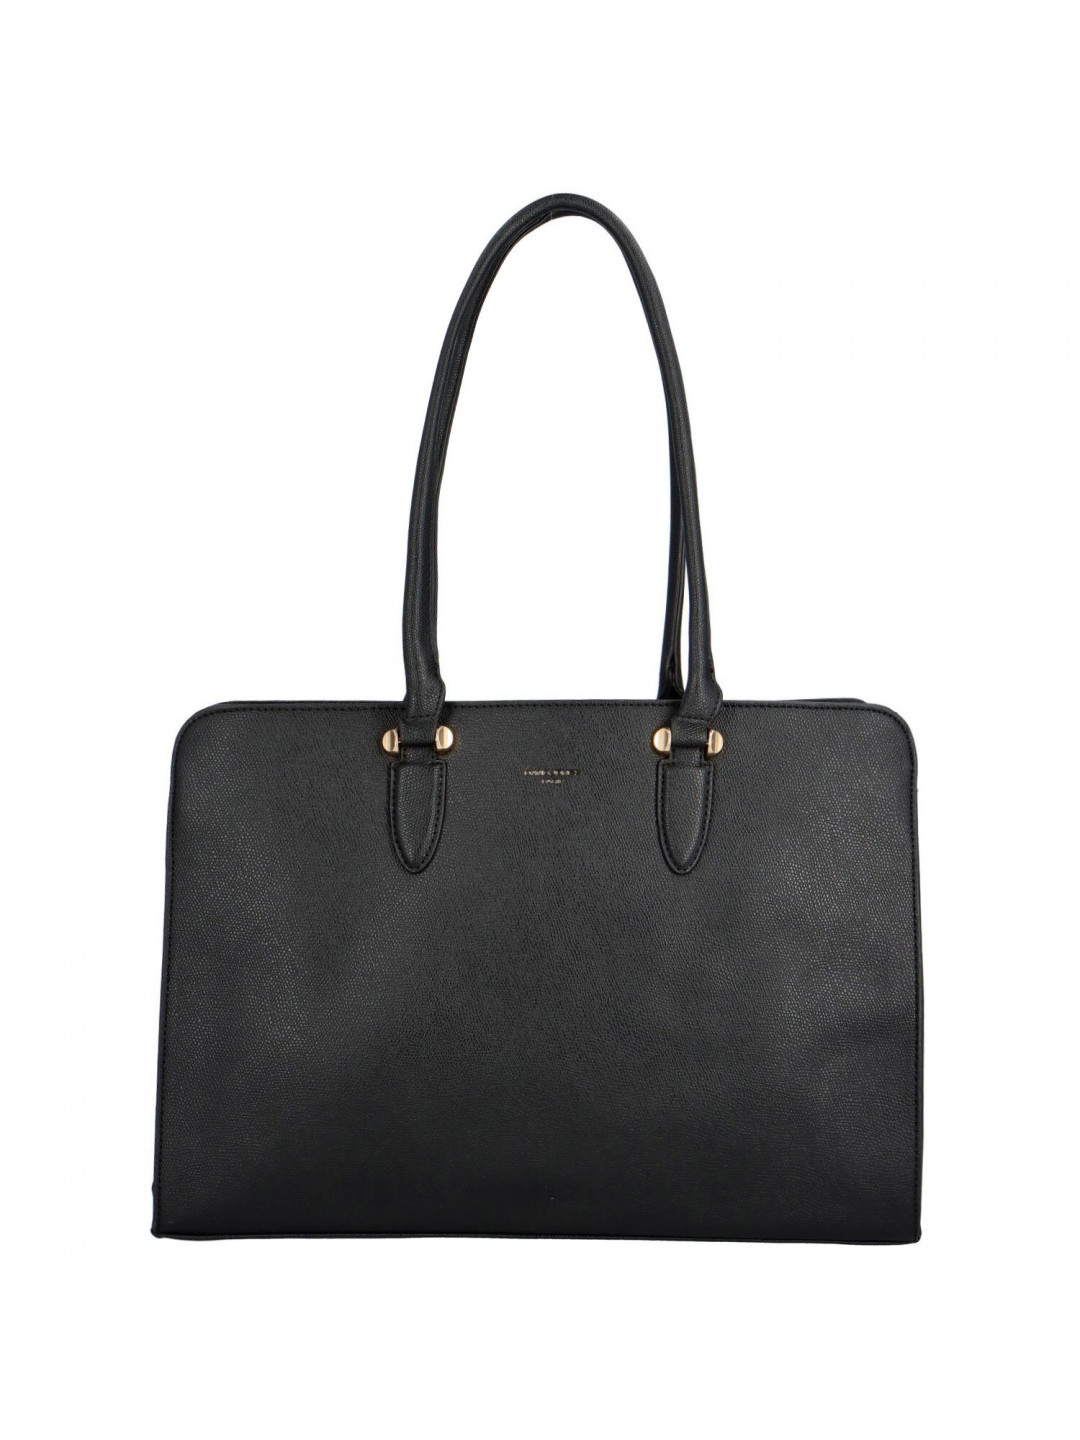 Luxusní dámská koženková kabelka Miriam černá